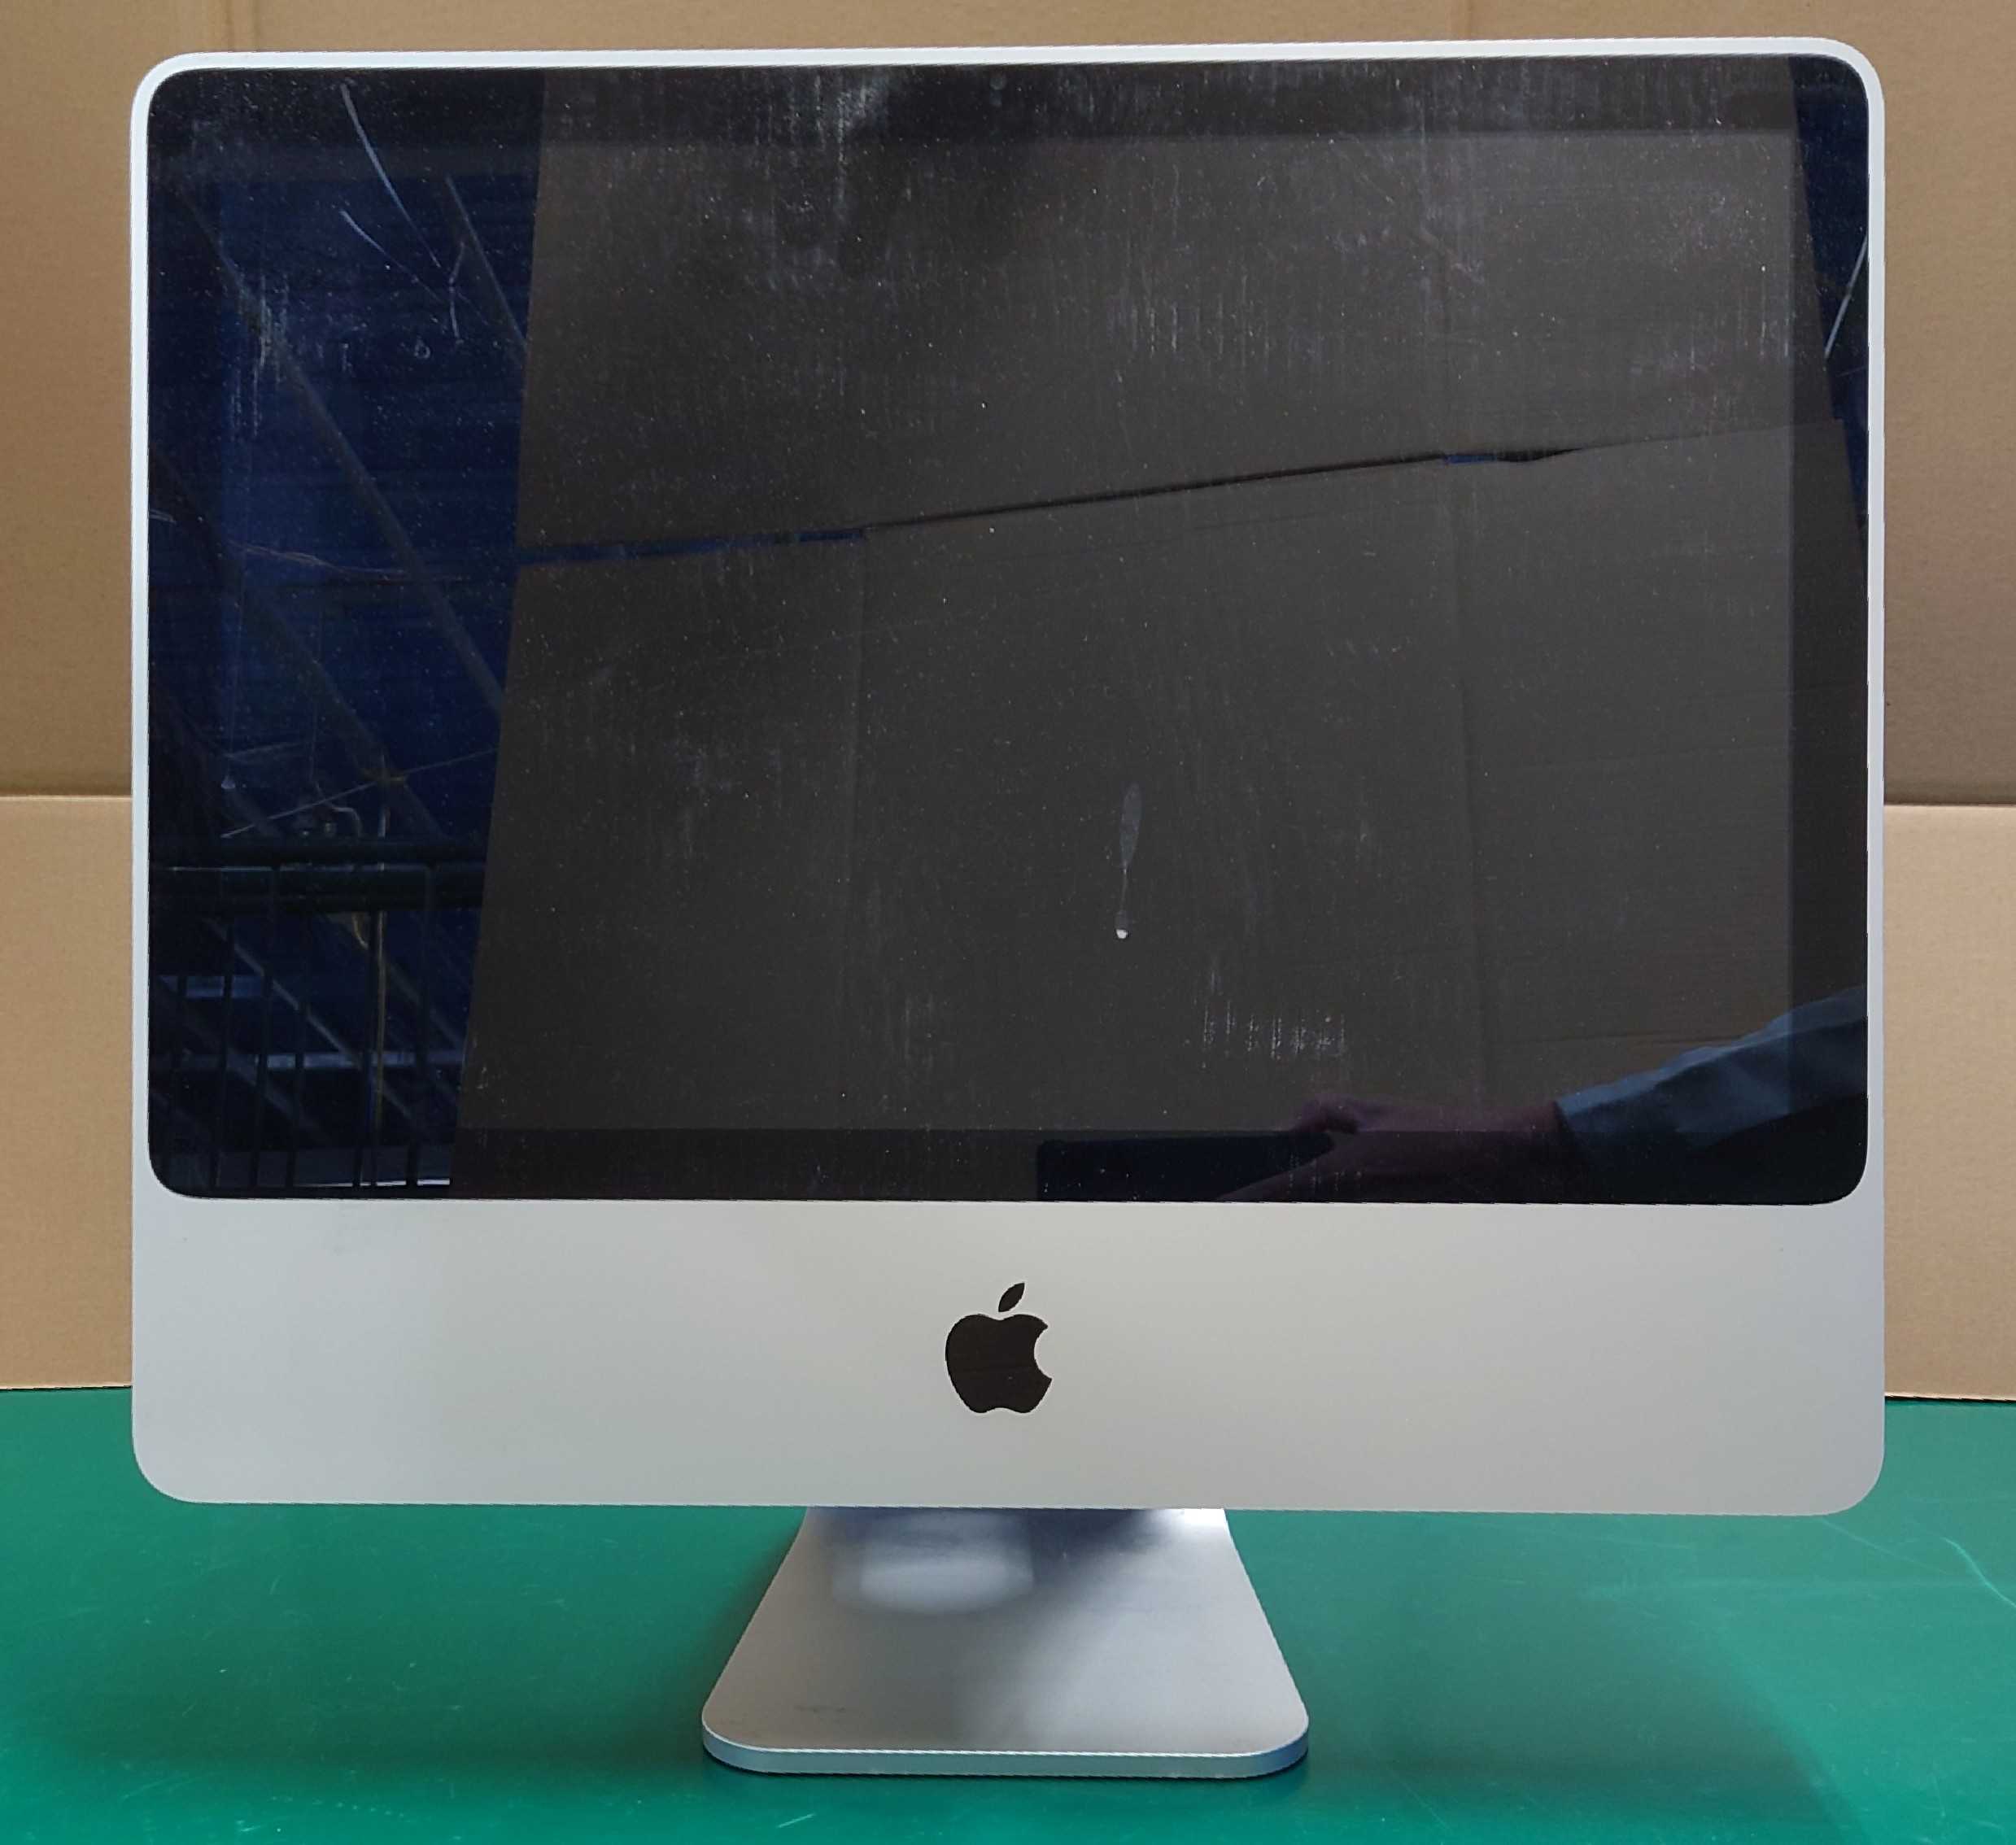 修理日誌】Apple iMac A1224 HDD取出し、DVDディスク取り出し作業を